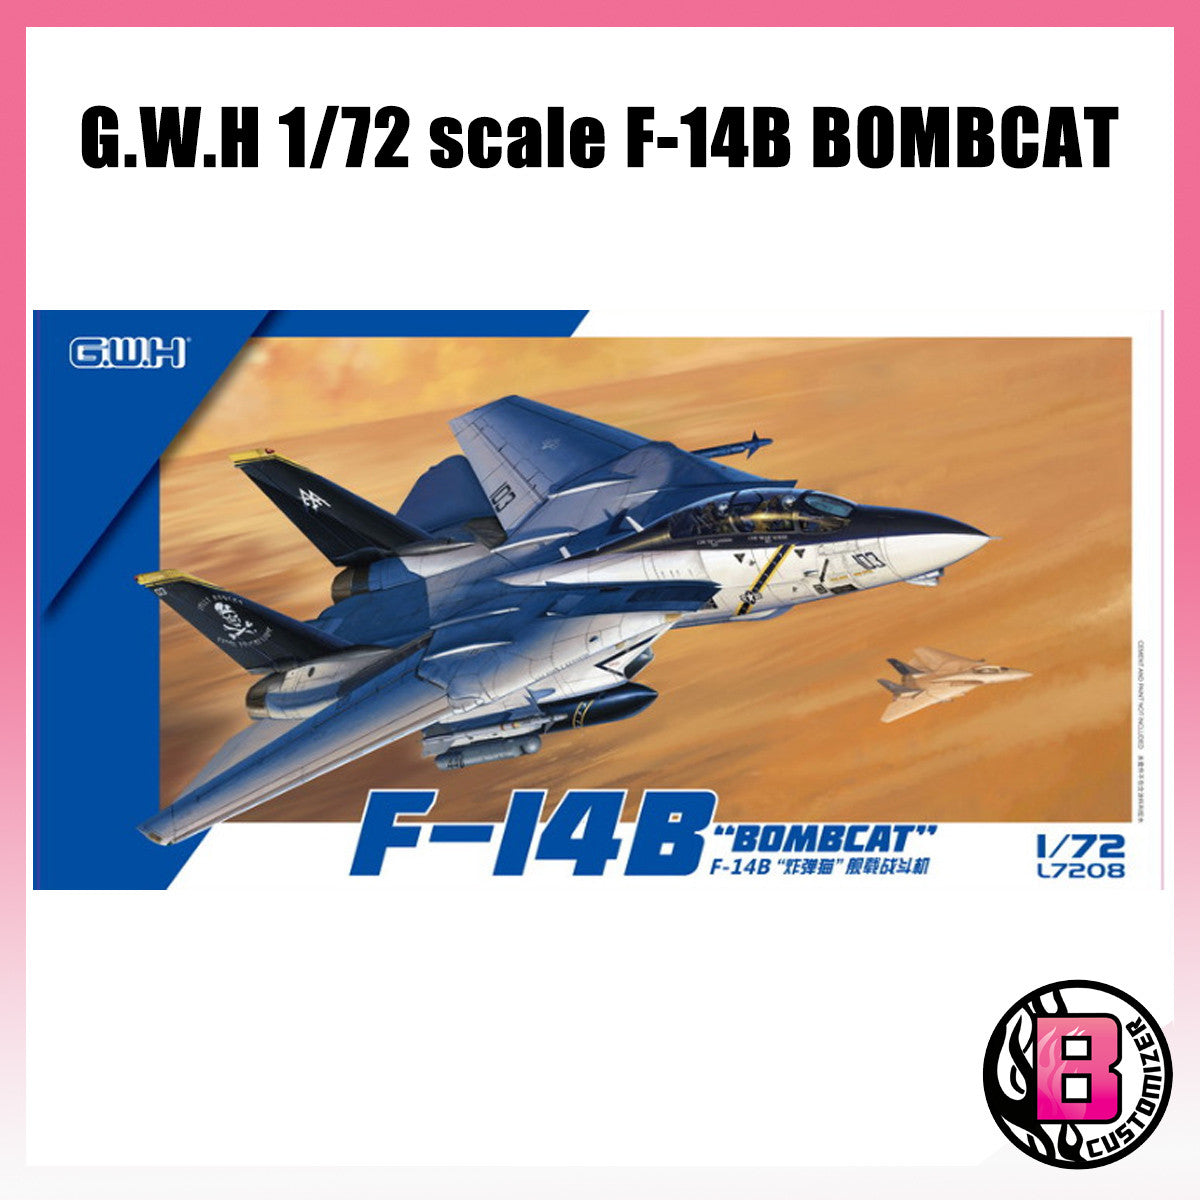 G.W.H 1/72 F-14B Bombcat (L7208)